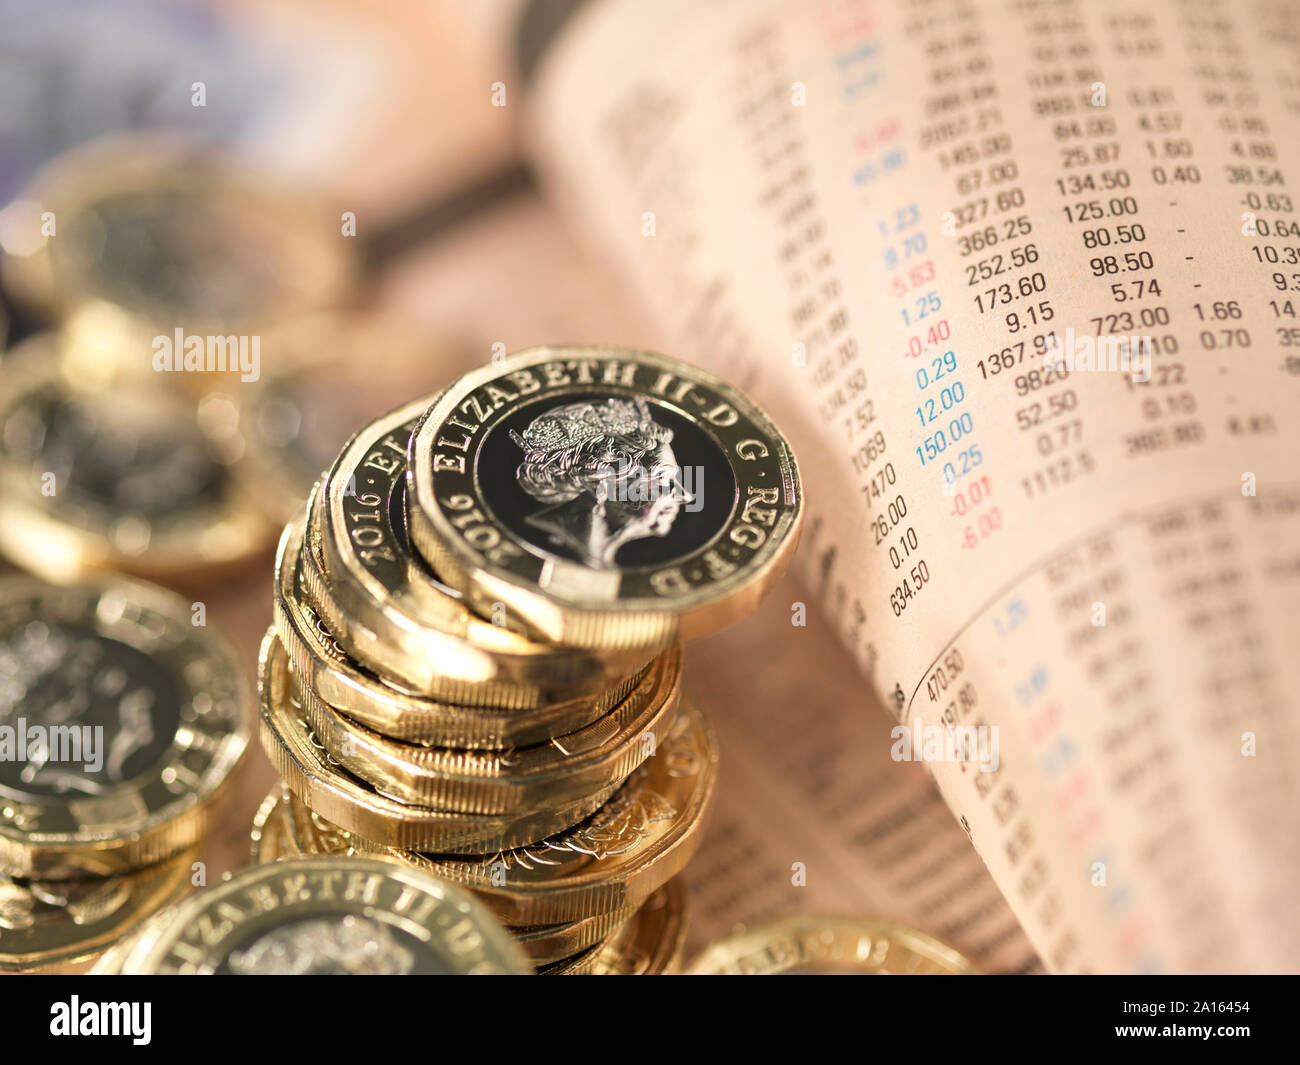 Economía y Finanzas del Reino Unido, UK pound monedas en una prensa financiera compartir página de precio Foto de stock